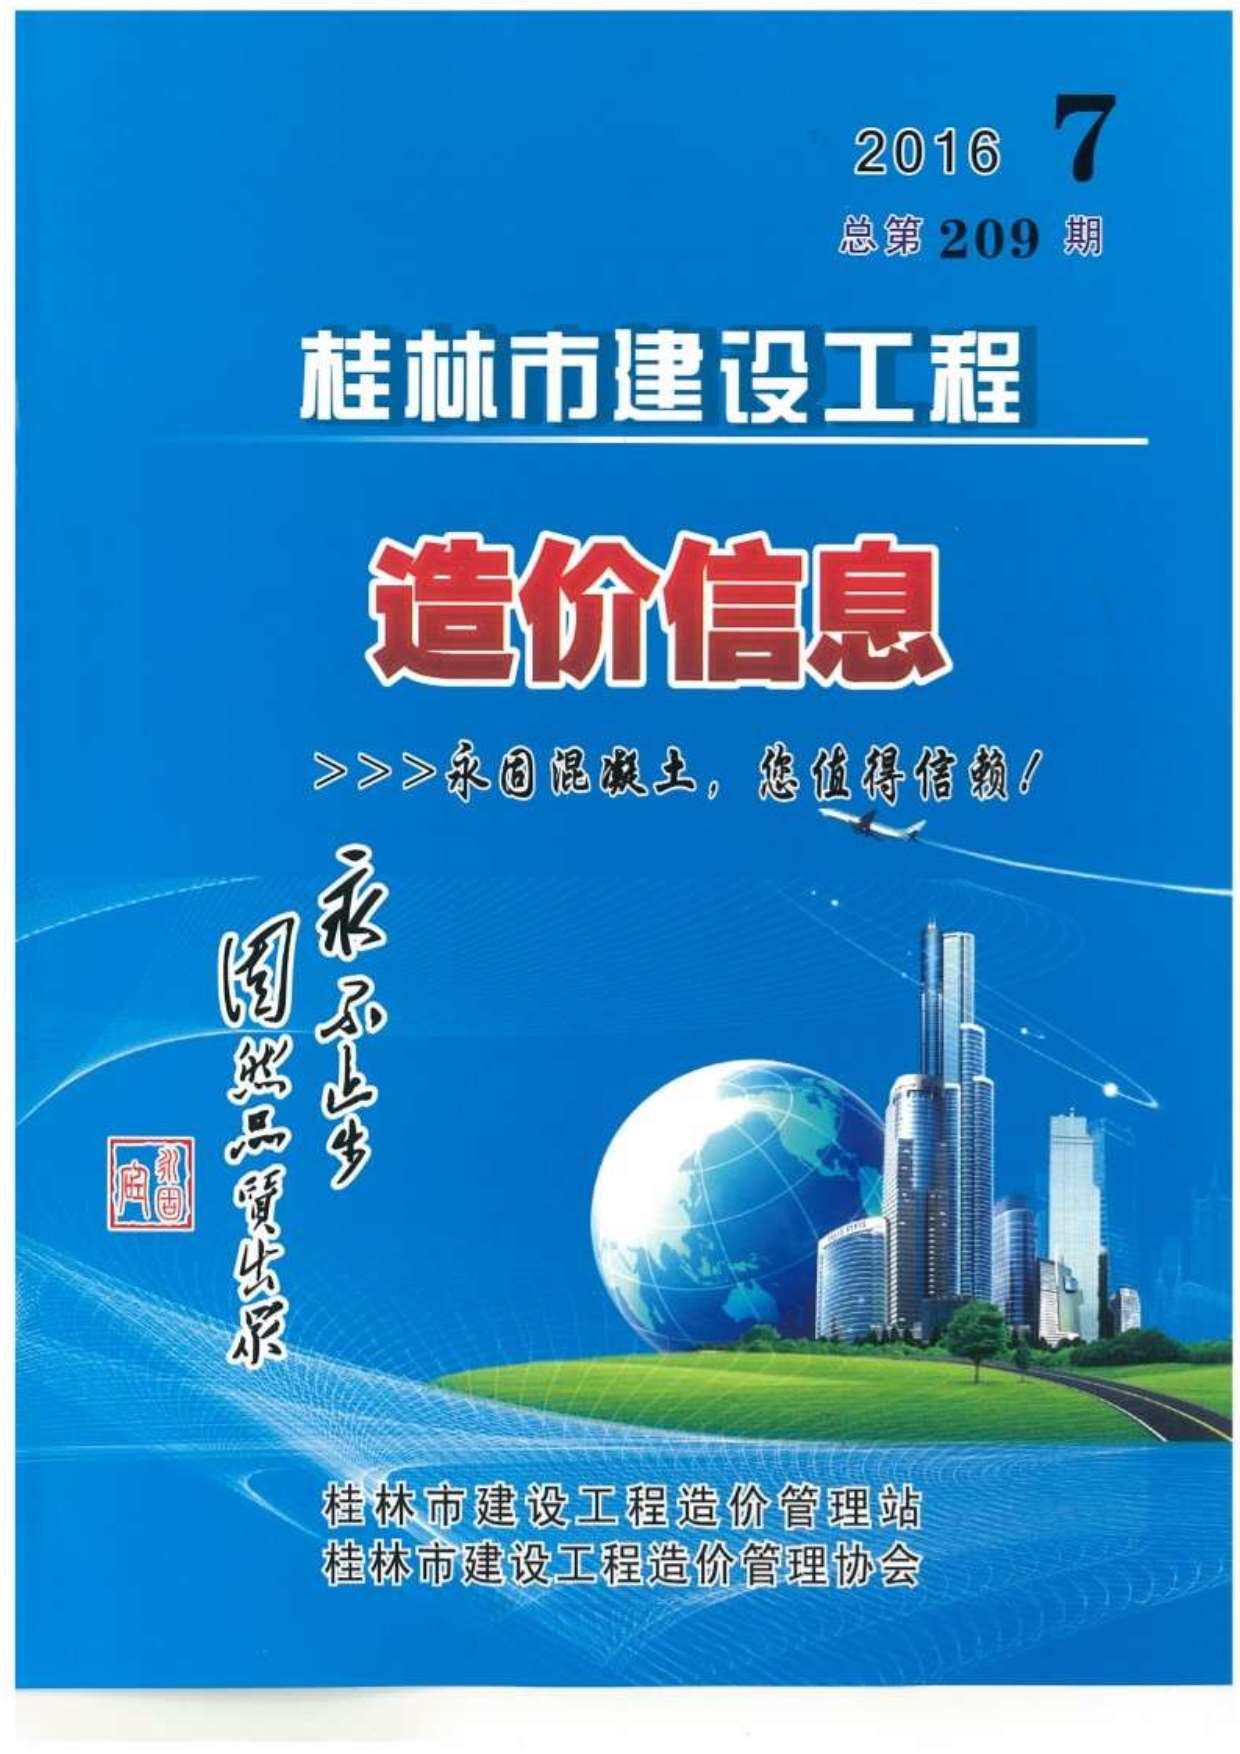 桂林市2016年7月建设工程造价信息造价库信息价